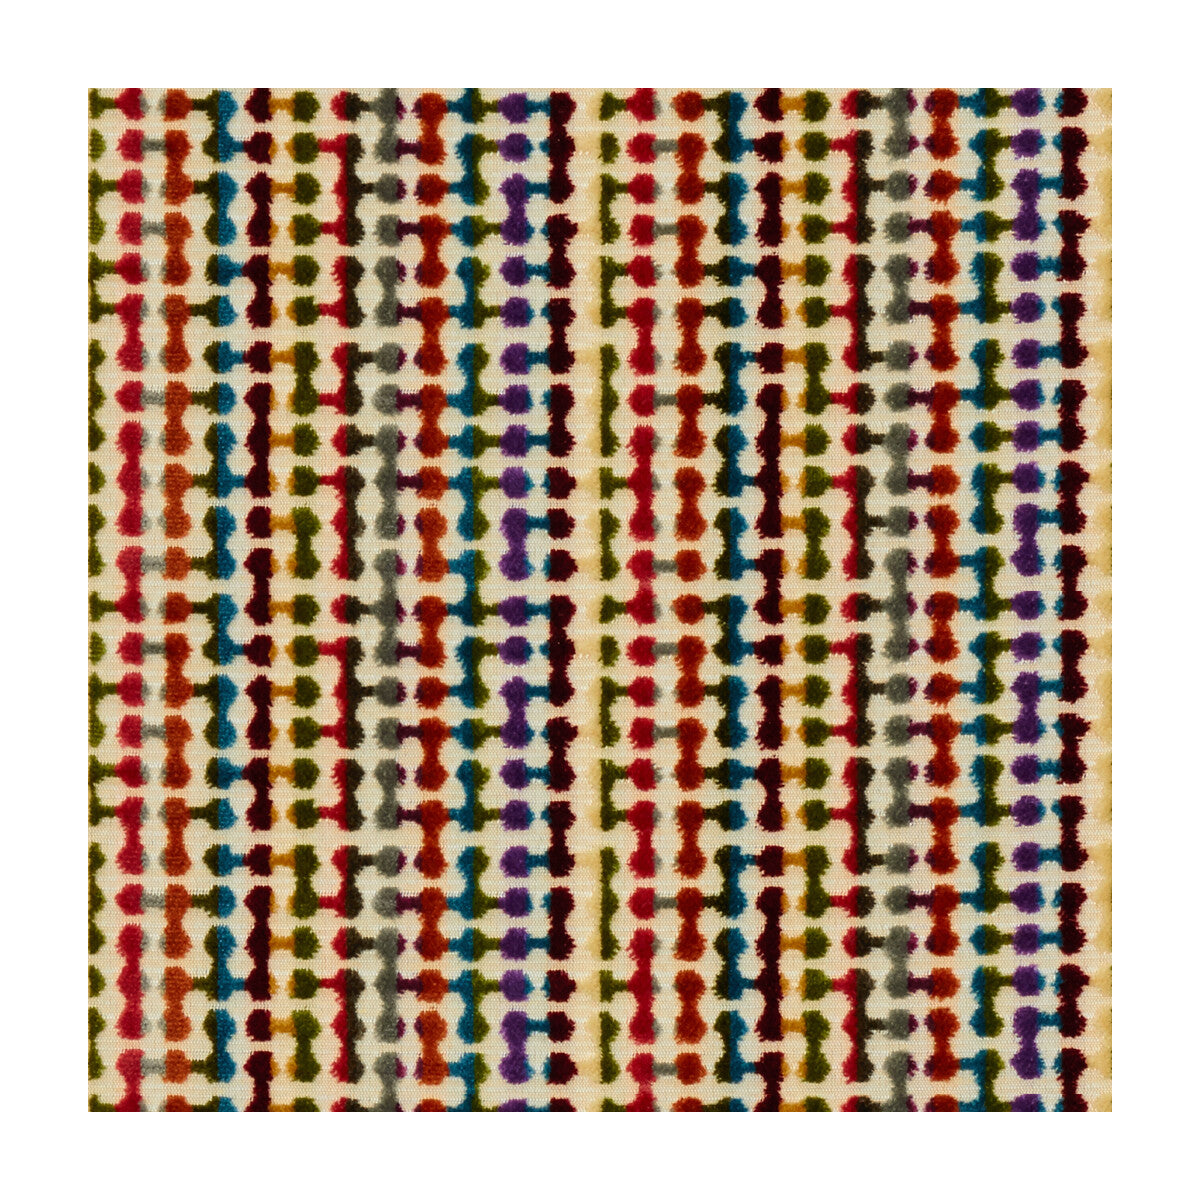 Kravet Design fabric in 34204-519 color - pattern 34204.519.0 - by Kravet Design